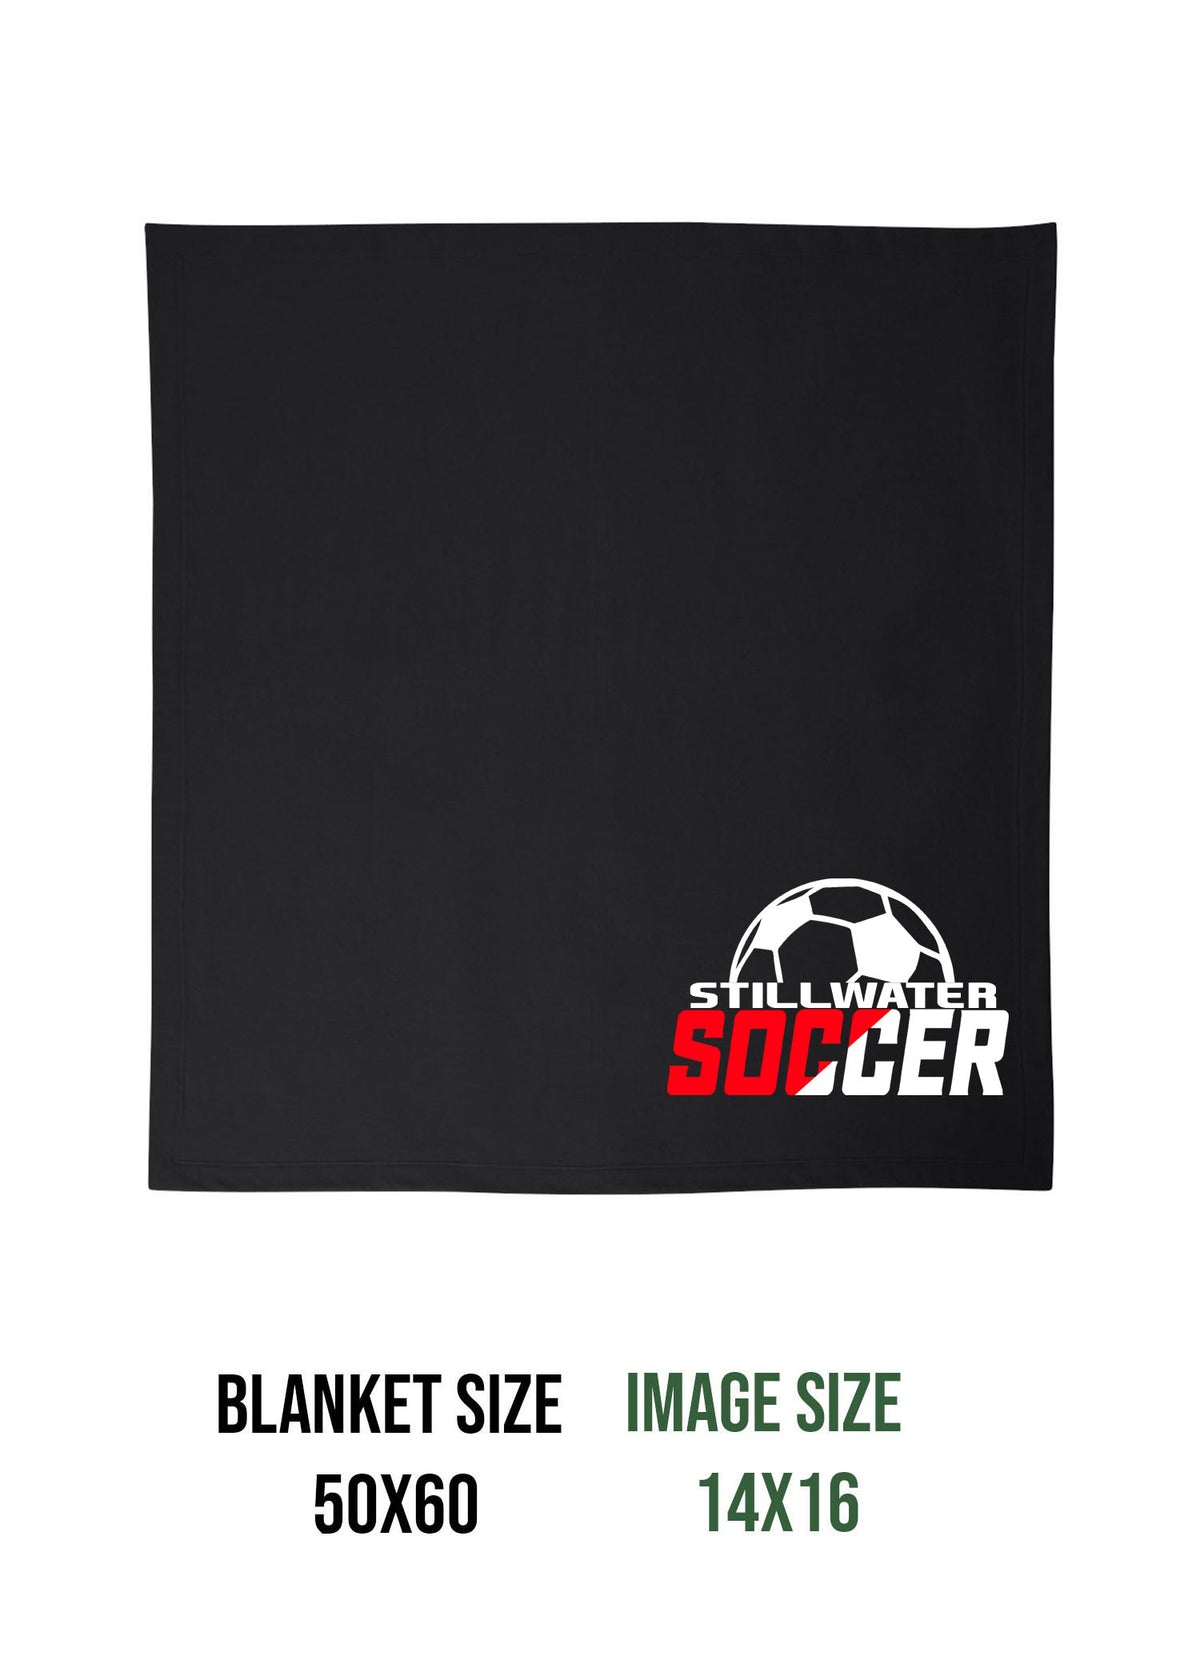 Stillwater Soccer Design 1 Blanket